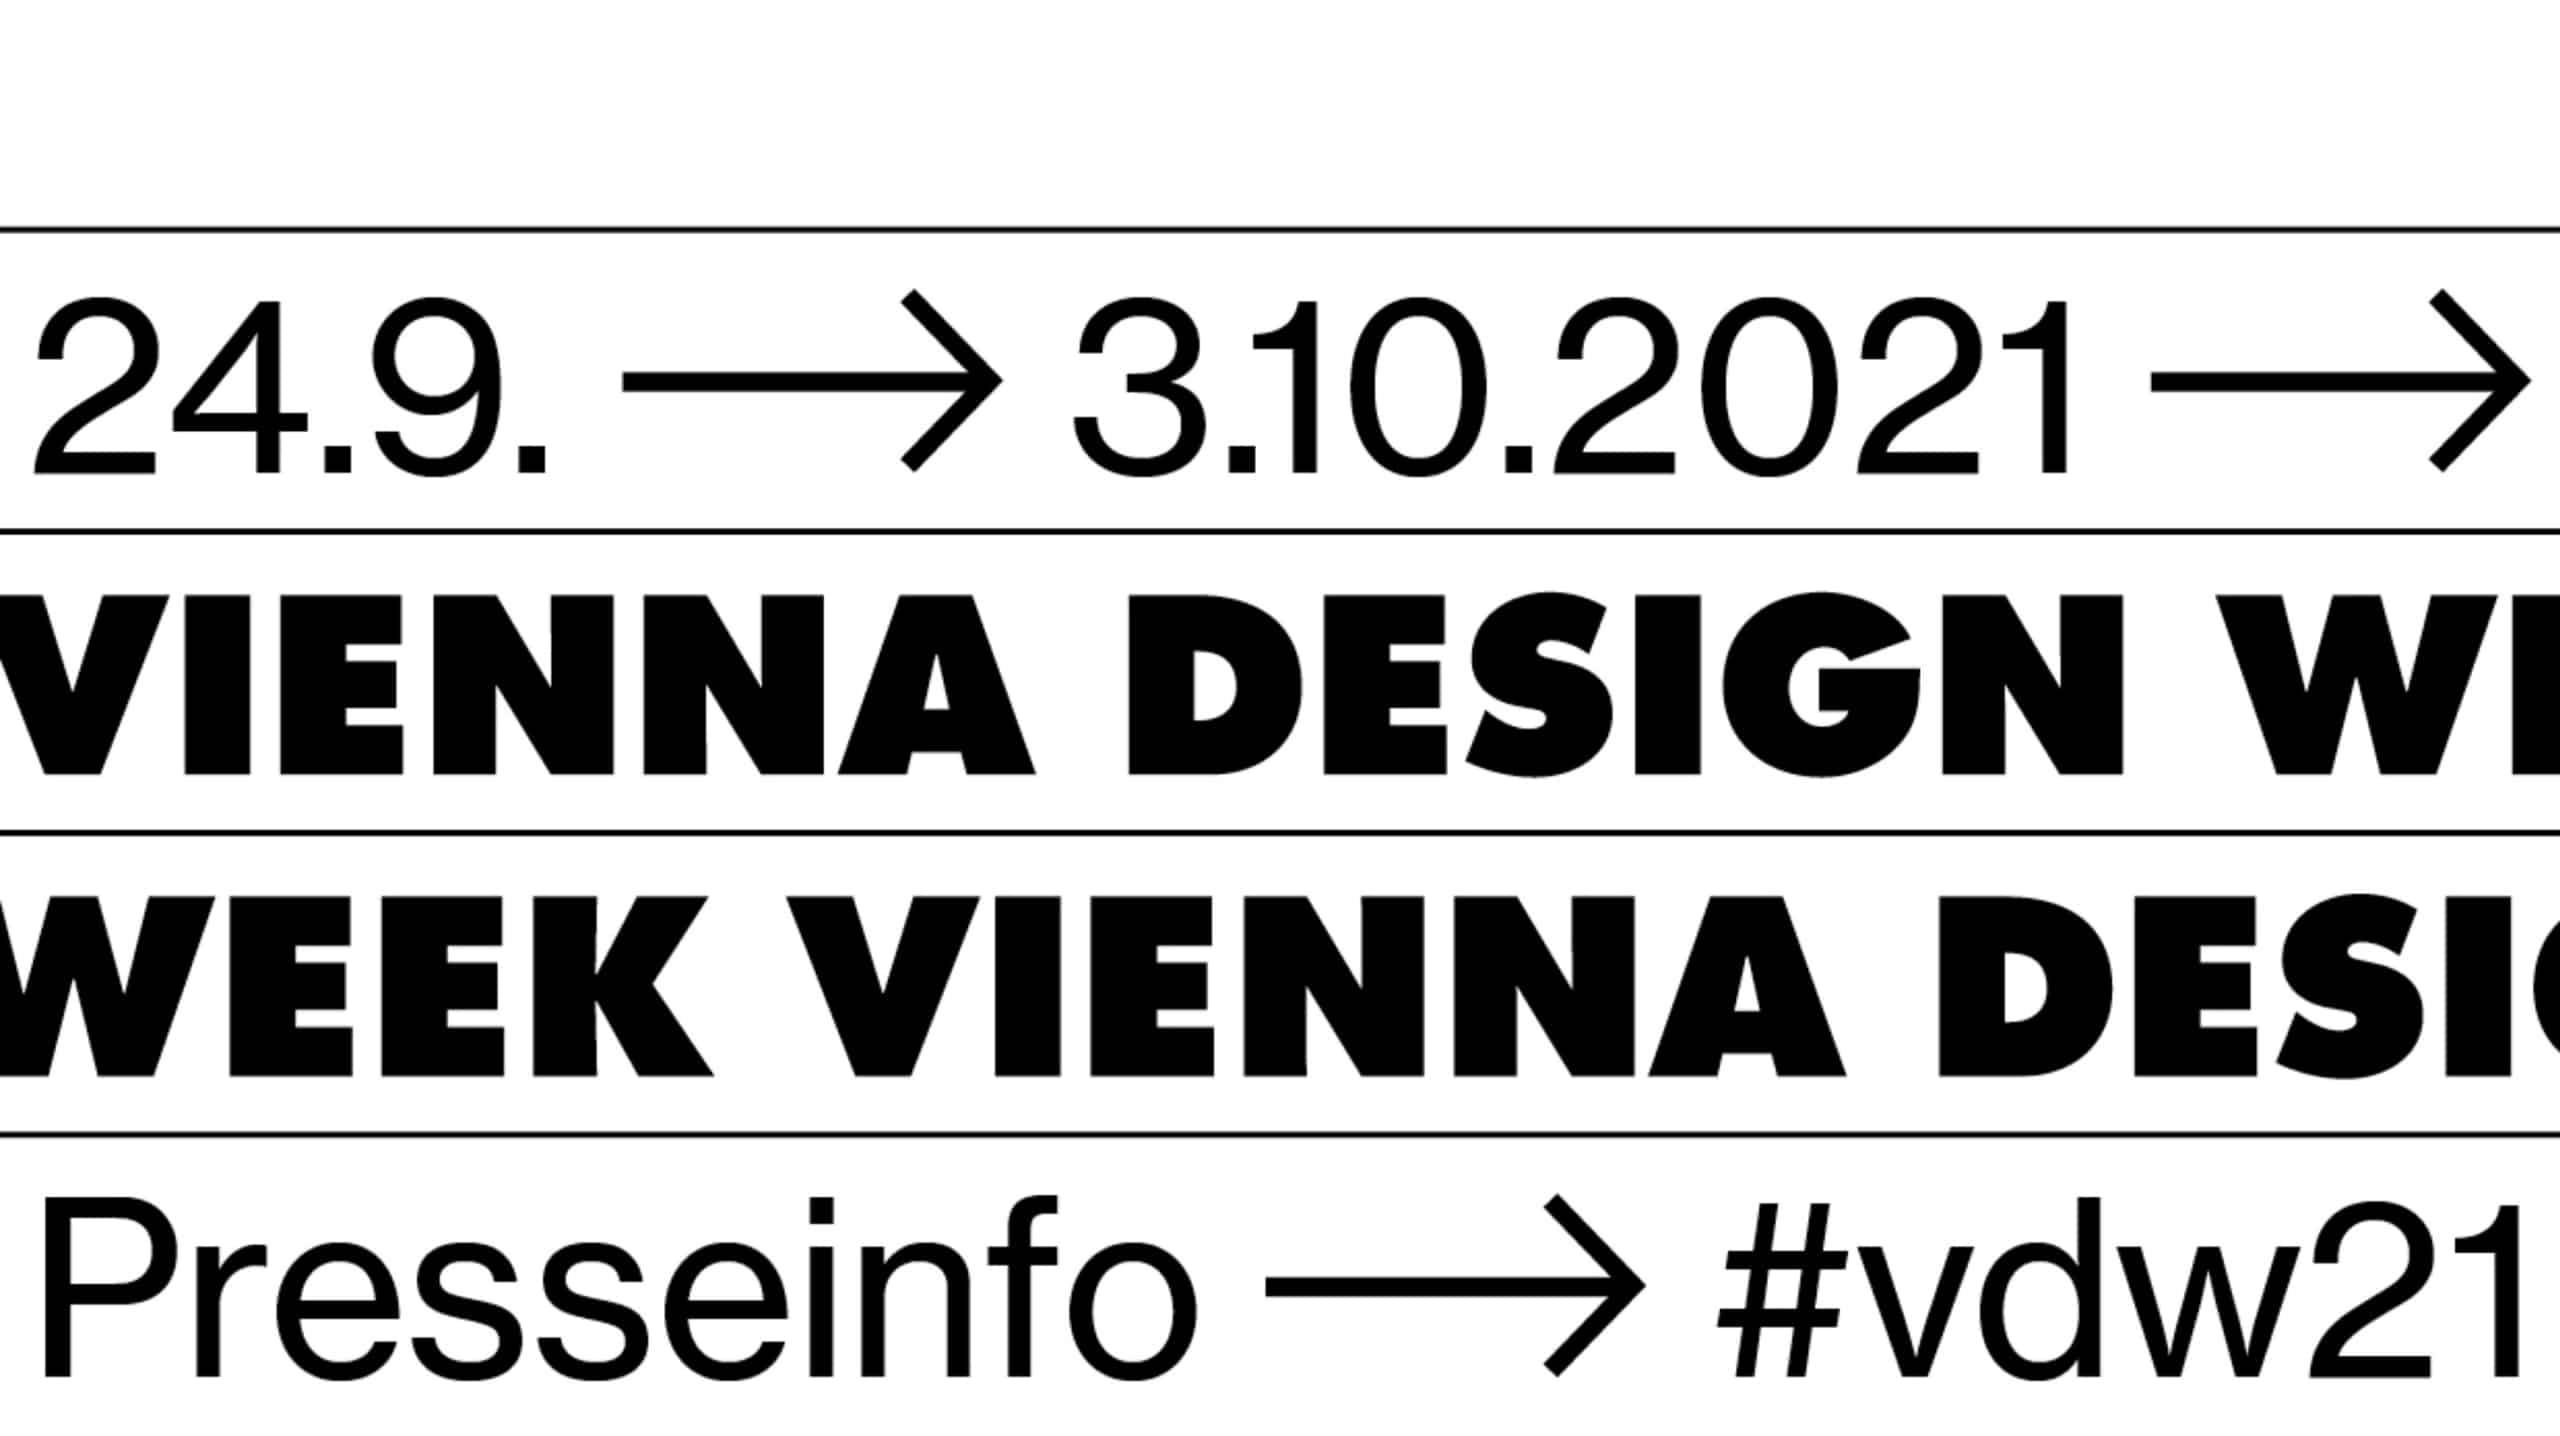 Tommaso Gentile e Laura Doro di Artemia espongono alla Vienna Design Week i progetti Perpetuo, Nanetto e Ciclope presso Puuul Space Exhibition The Space